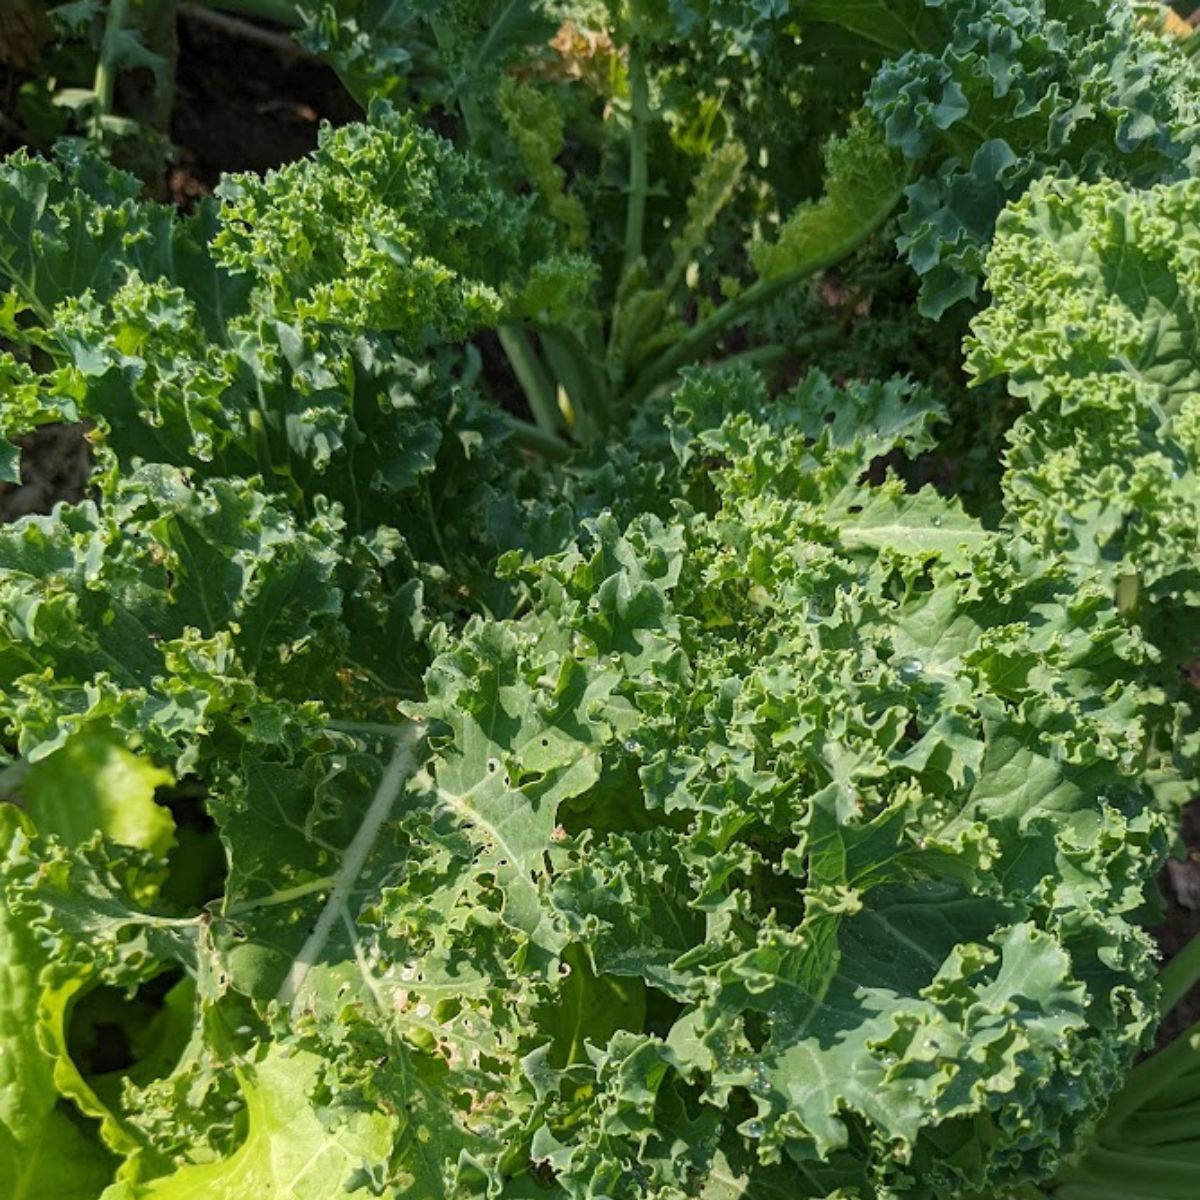 Kale growing in the garden